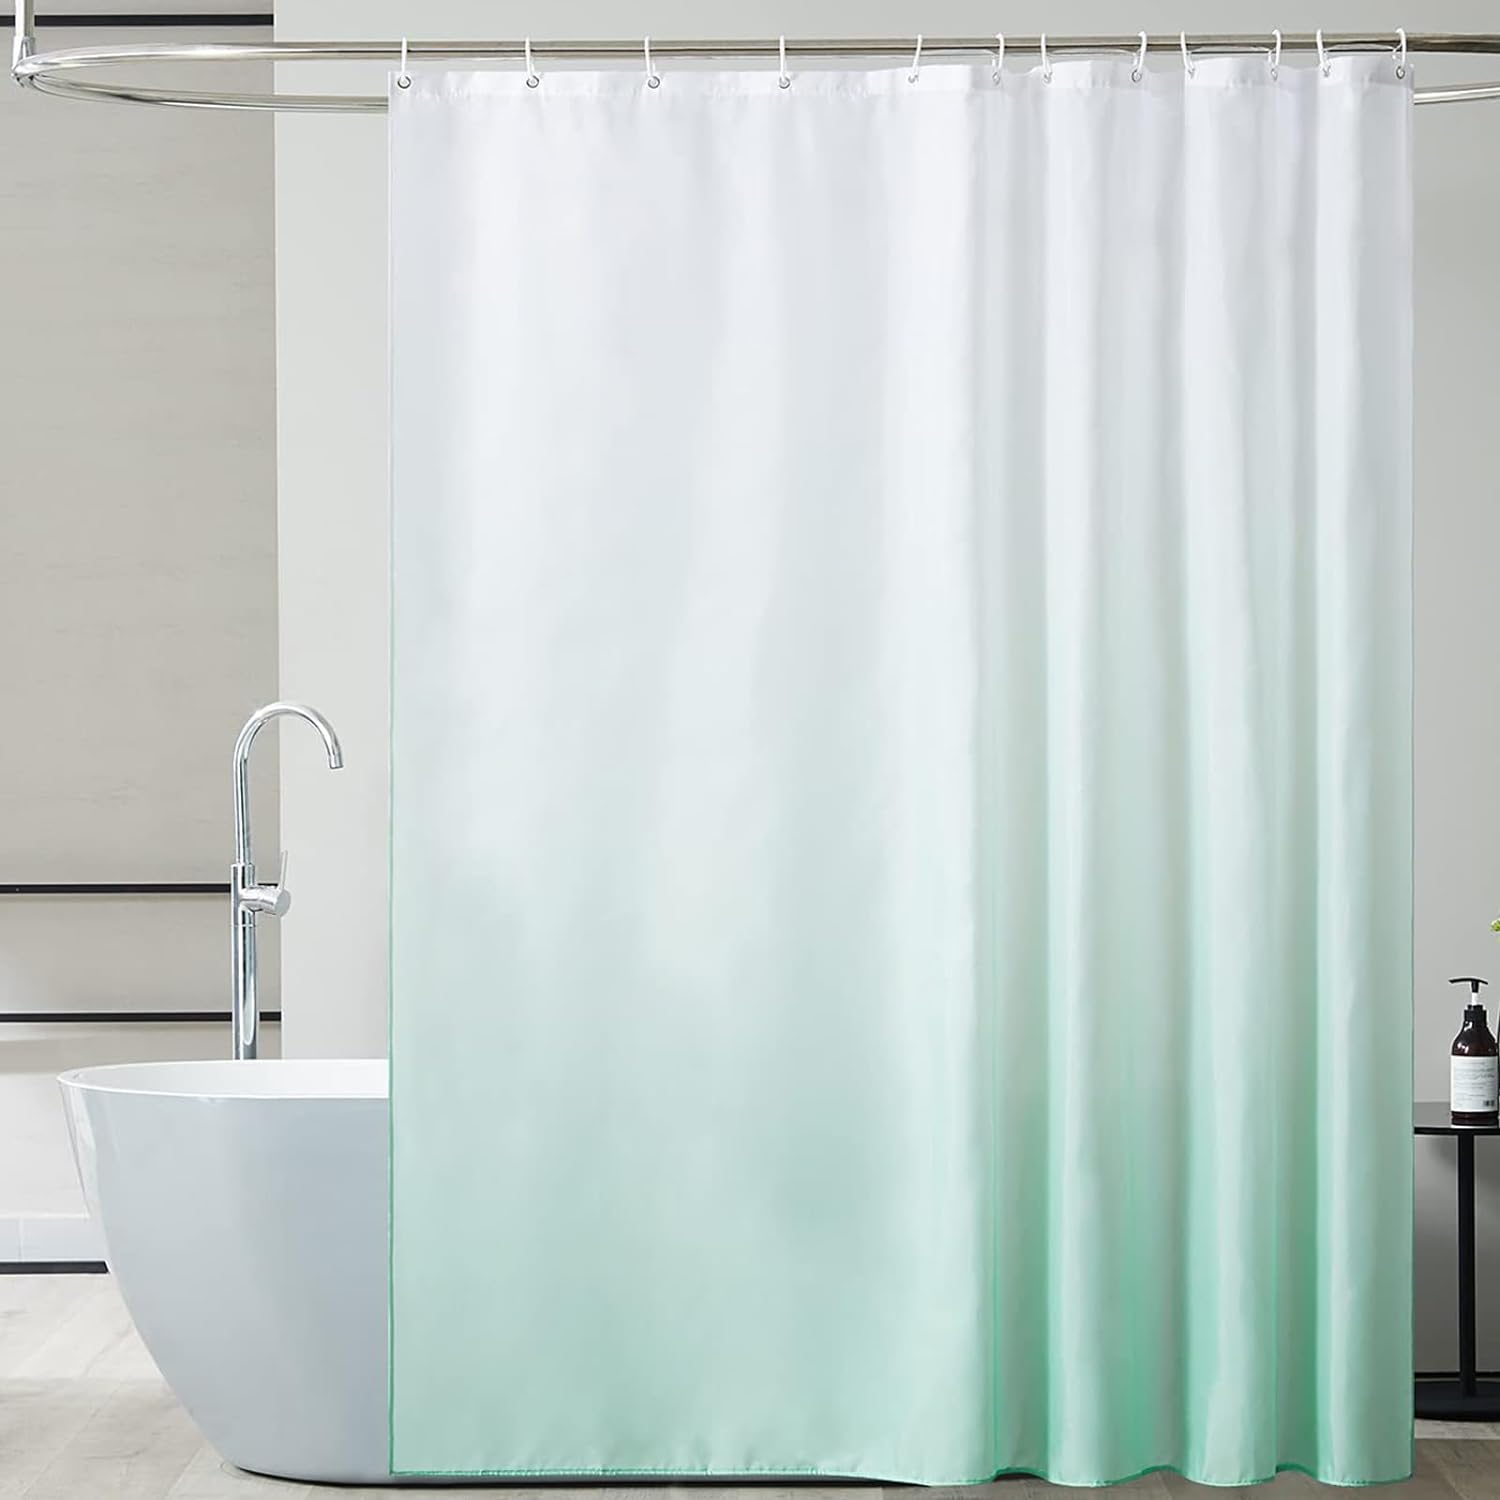 Rideau de douche textile, imperméable, lavable, 120 x 200 cm, avec 12  anneaux de rideau de douche, pour baignoire, salle de bain (vert)